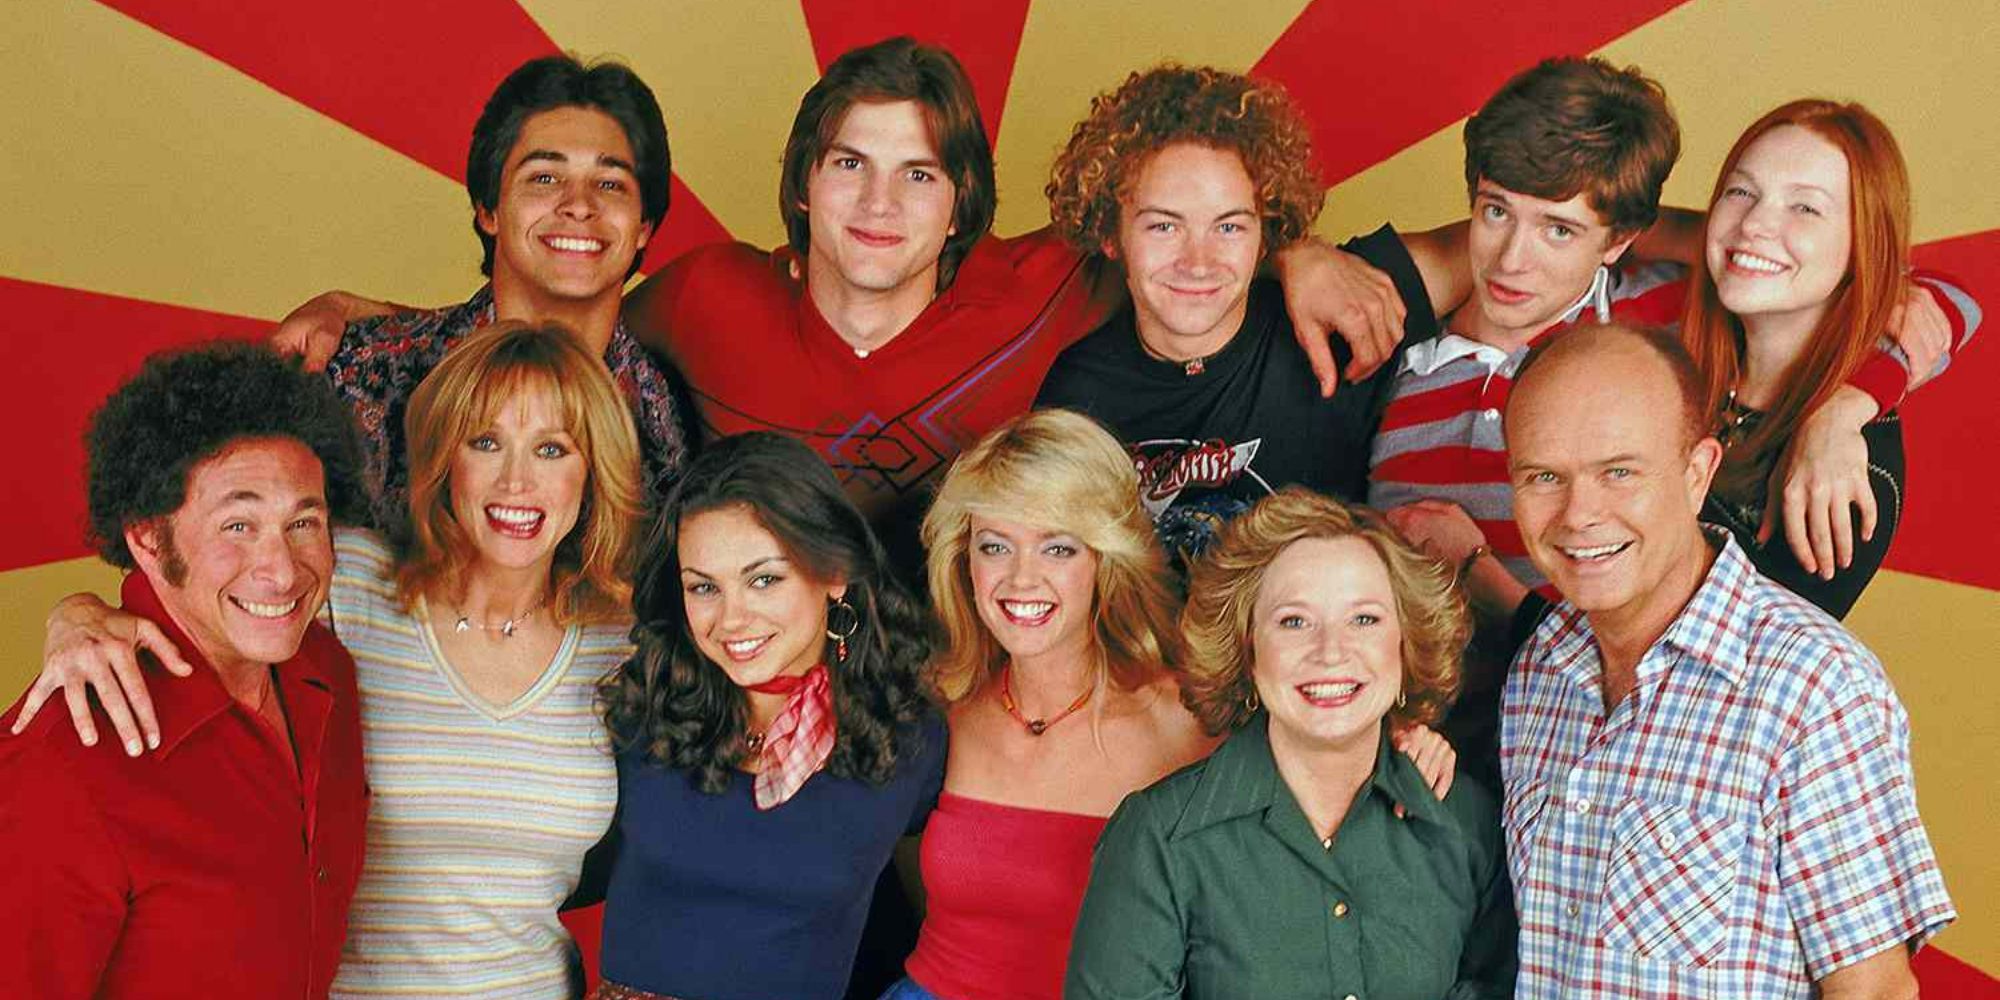 Los actores originales desaparecidos de la temporada 2 de That '90s Show se quejan del regreso de un personaje después de 19 años peor